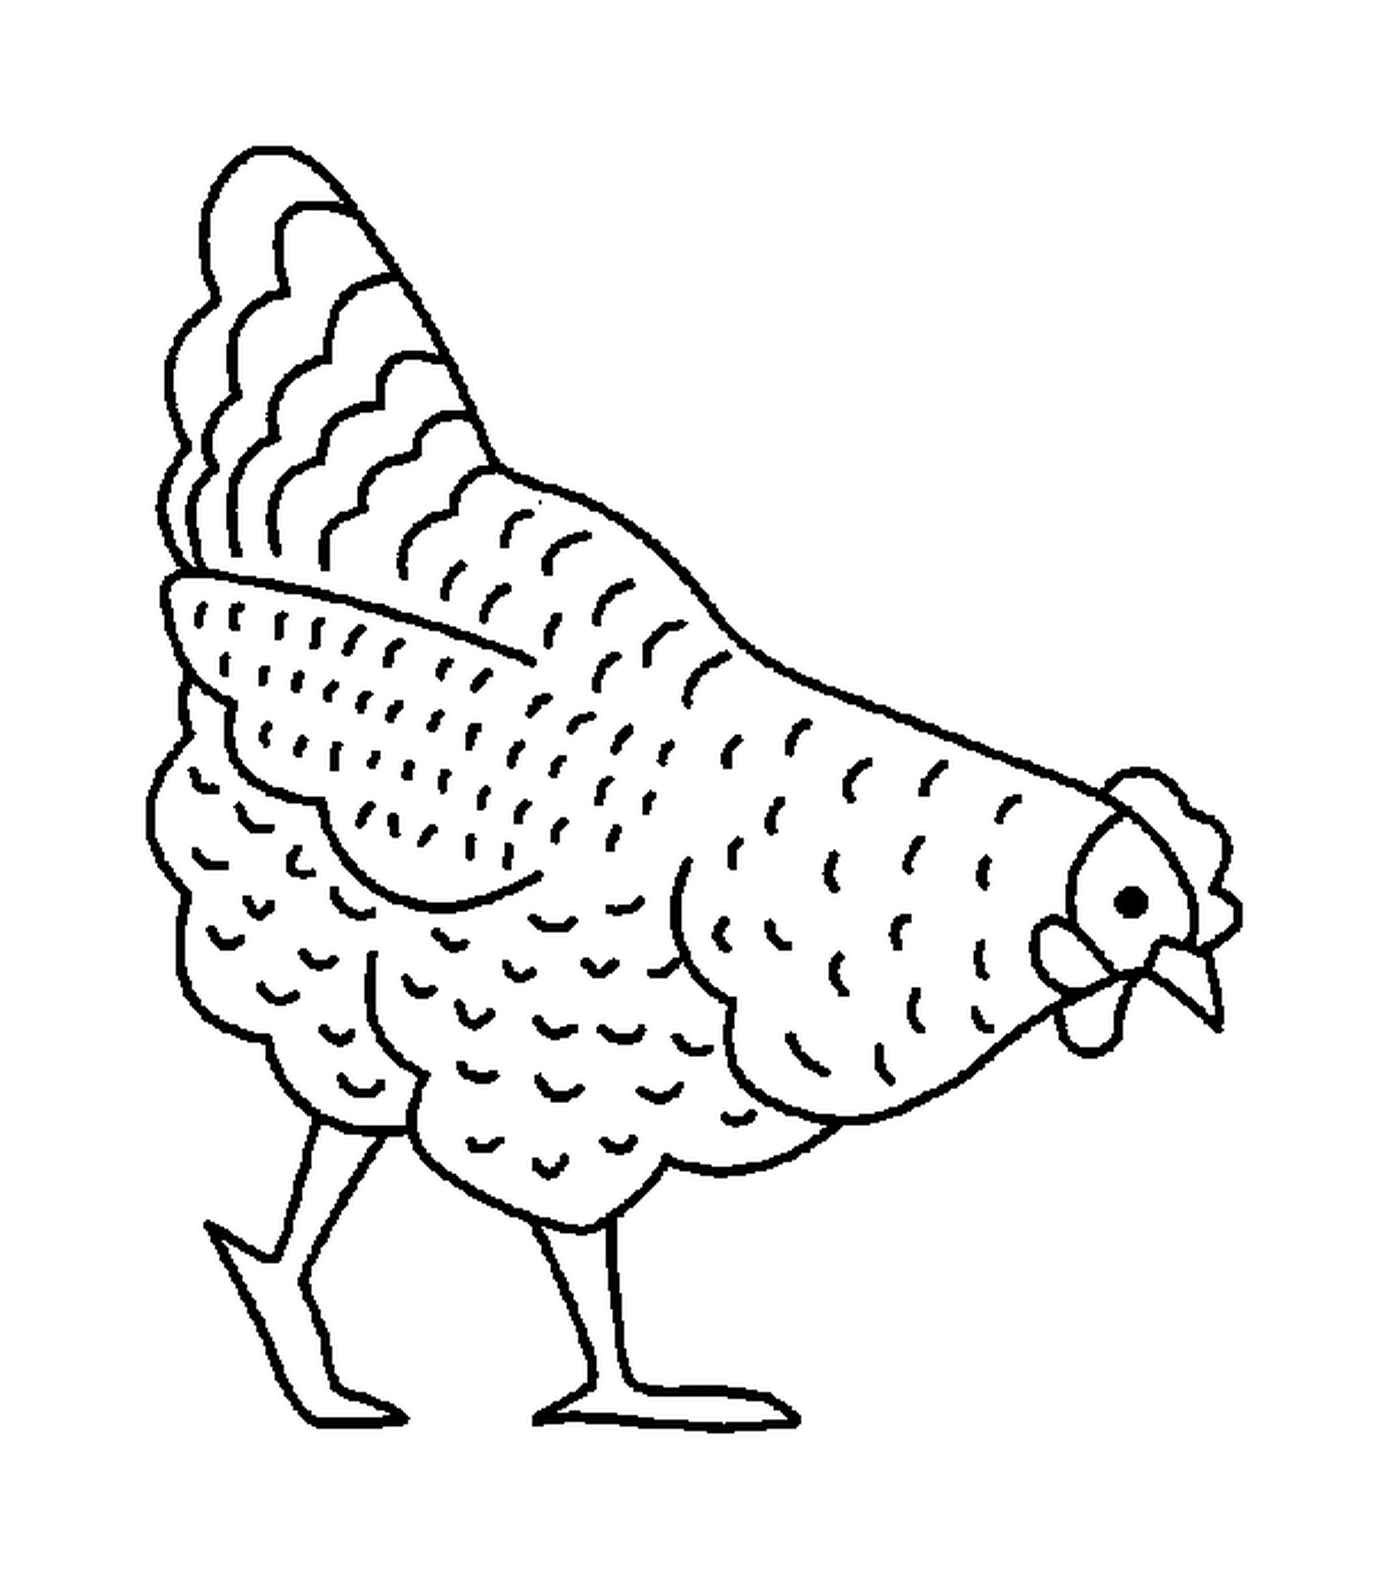  Величественная цыпленок, стоящий в одиночестве 